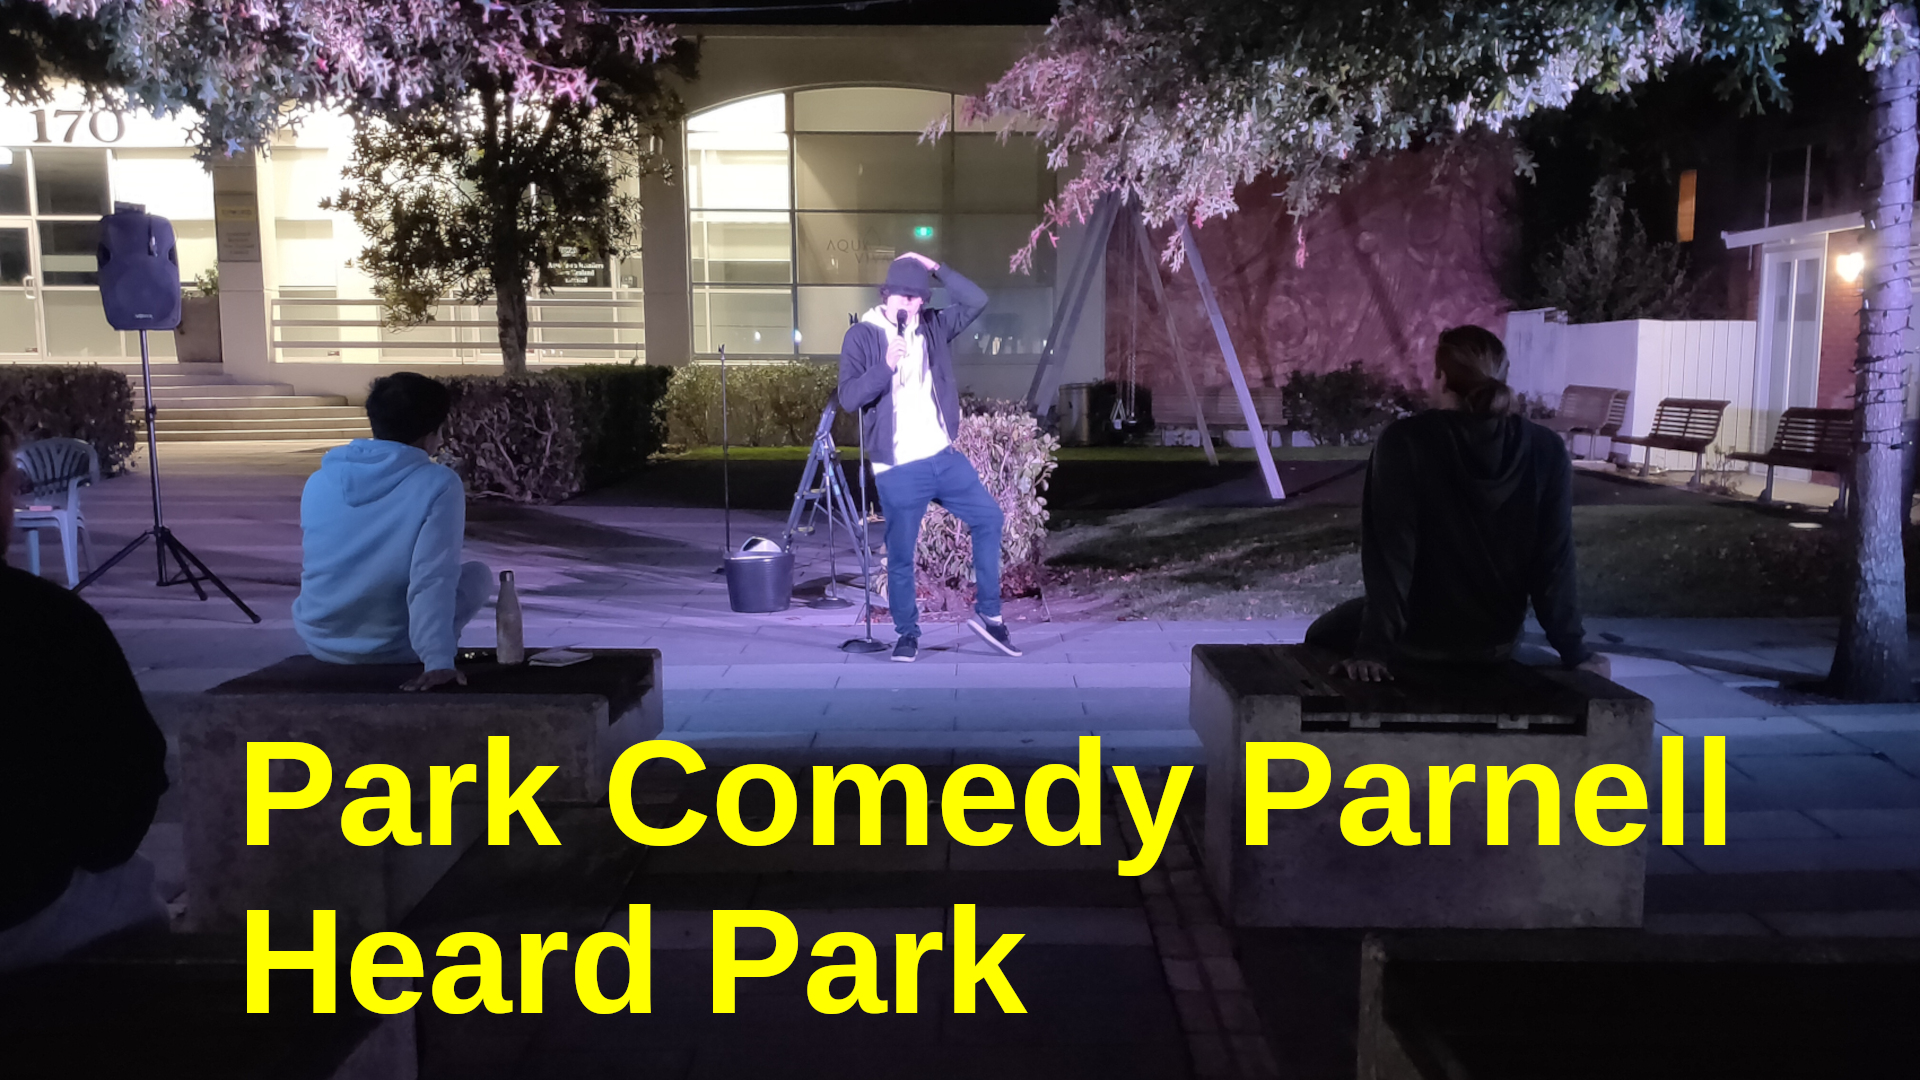 Park Comedy, Heard Park, Parnell